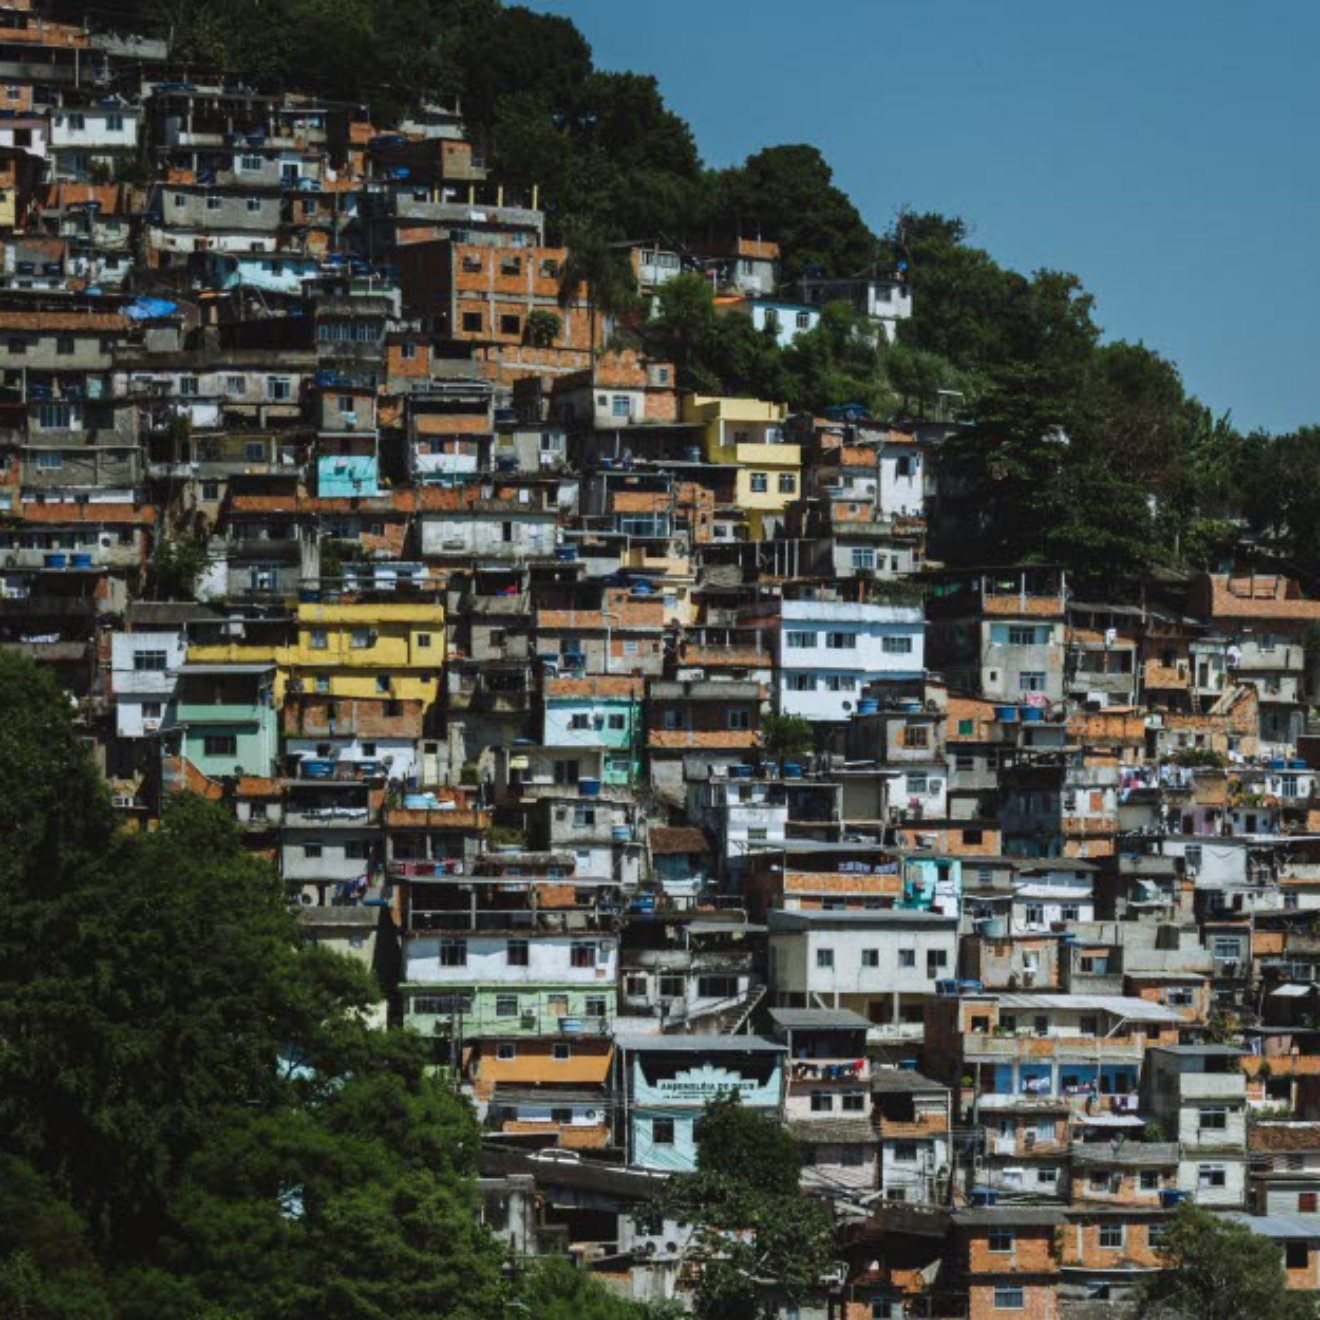 Favela-rio-de-janeiro